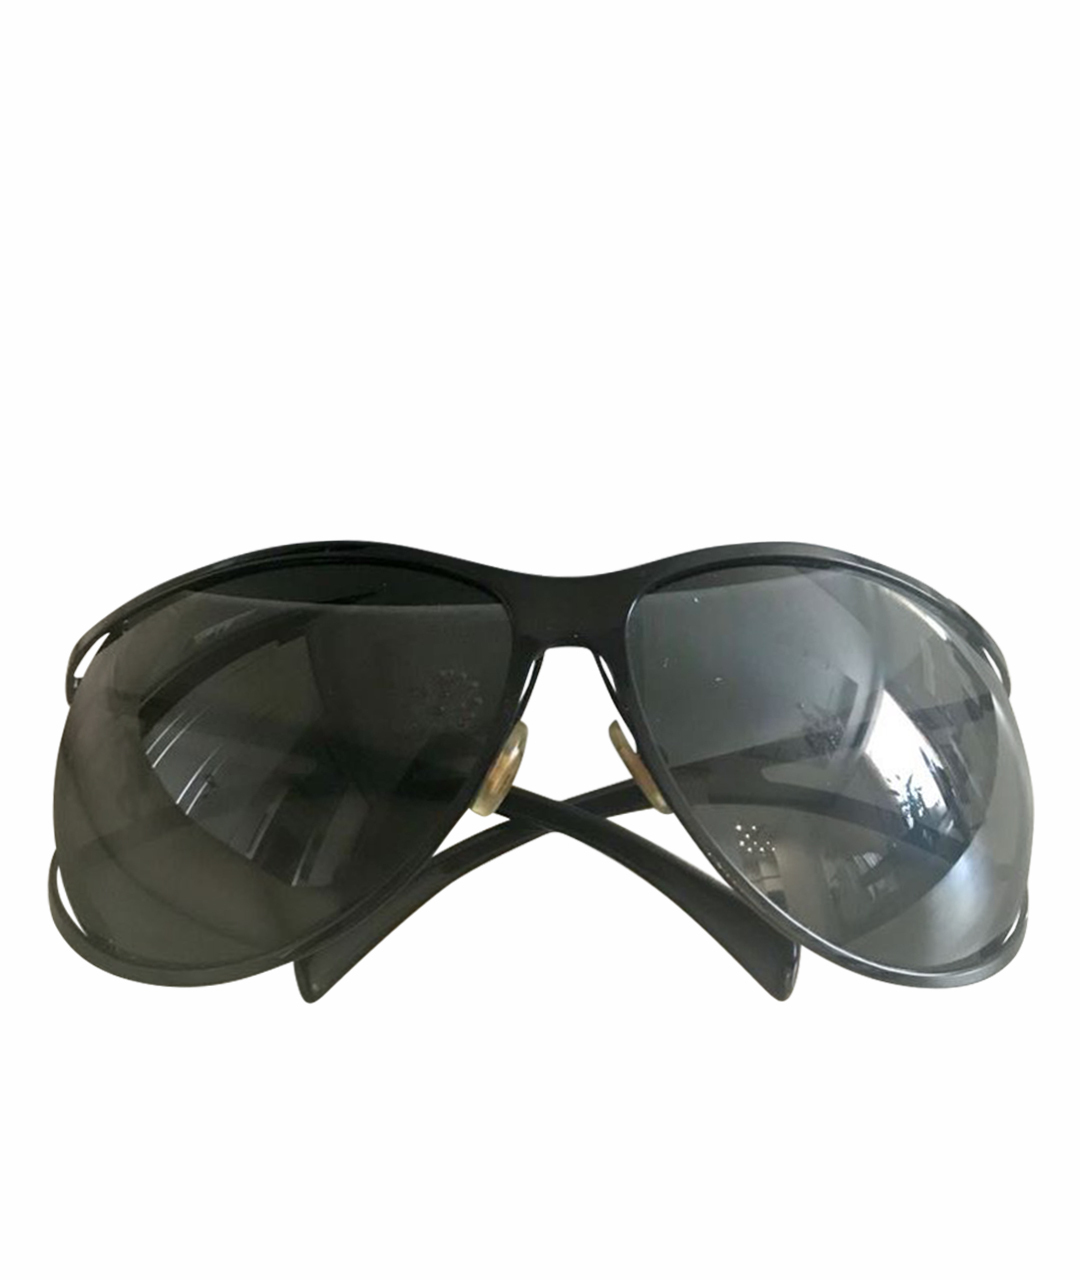 YVES SAINT LAURENT VINTAGE Черные пластиковые солнцезащитные очки, фото 1